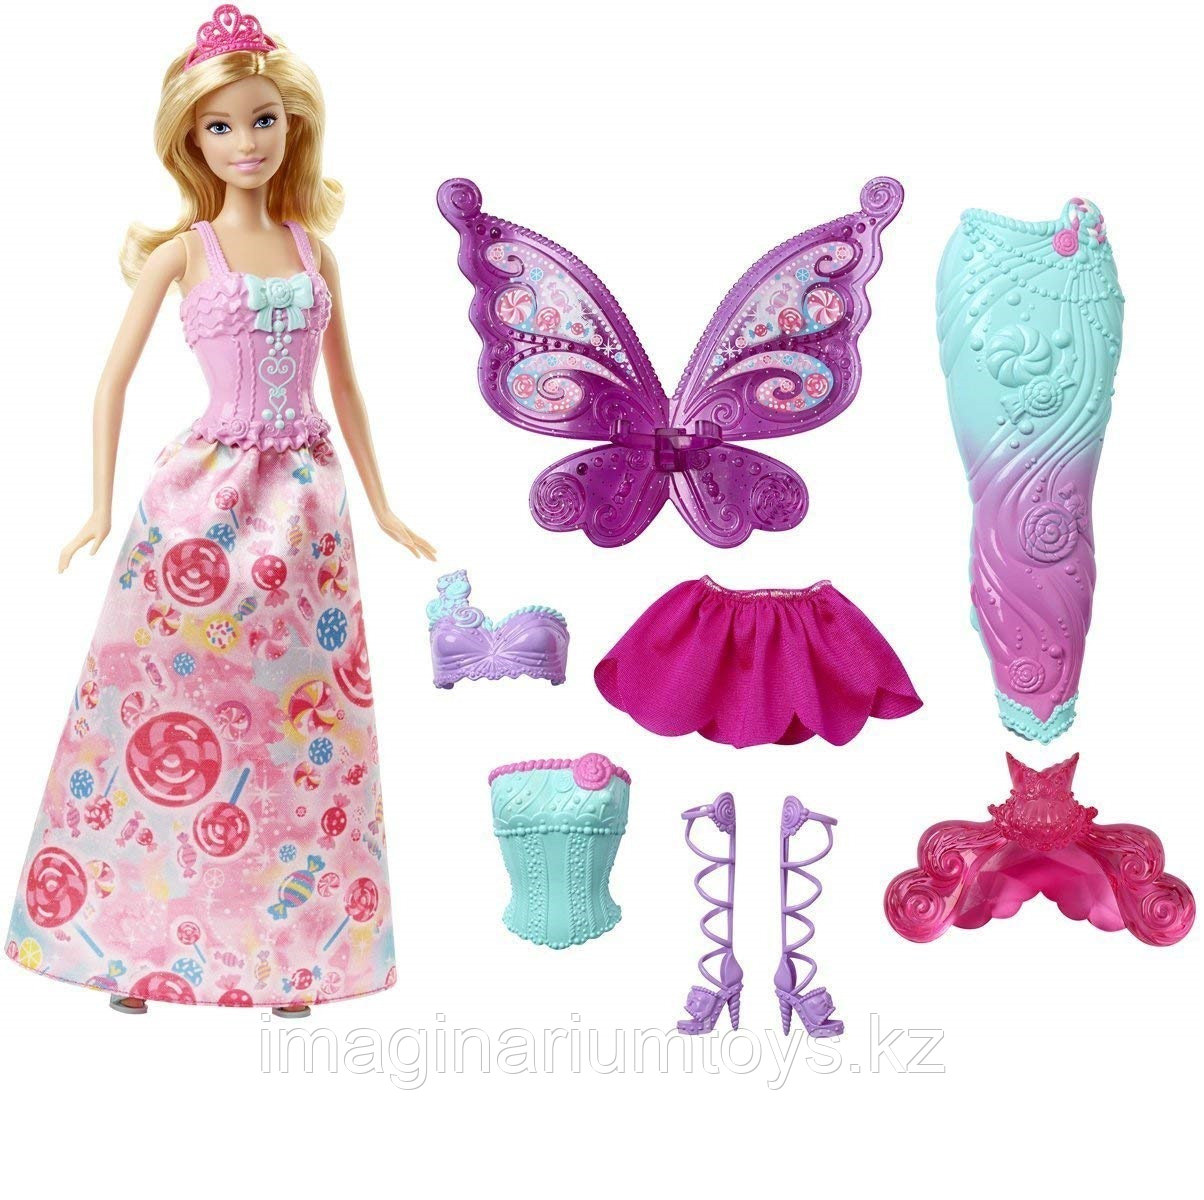 Кукла Барби Дримтопия Фея с комплектом одежды, фото 1